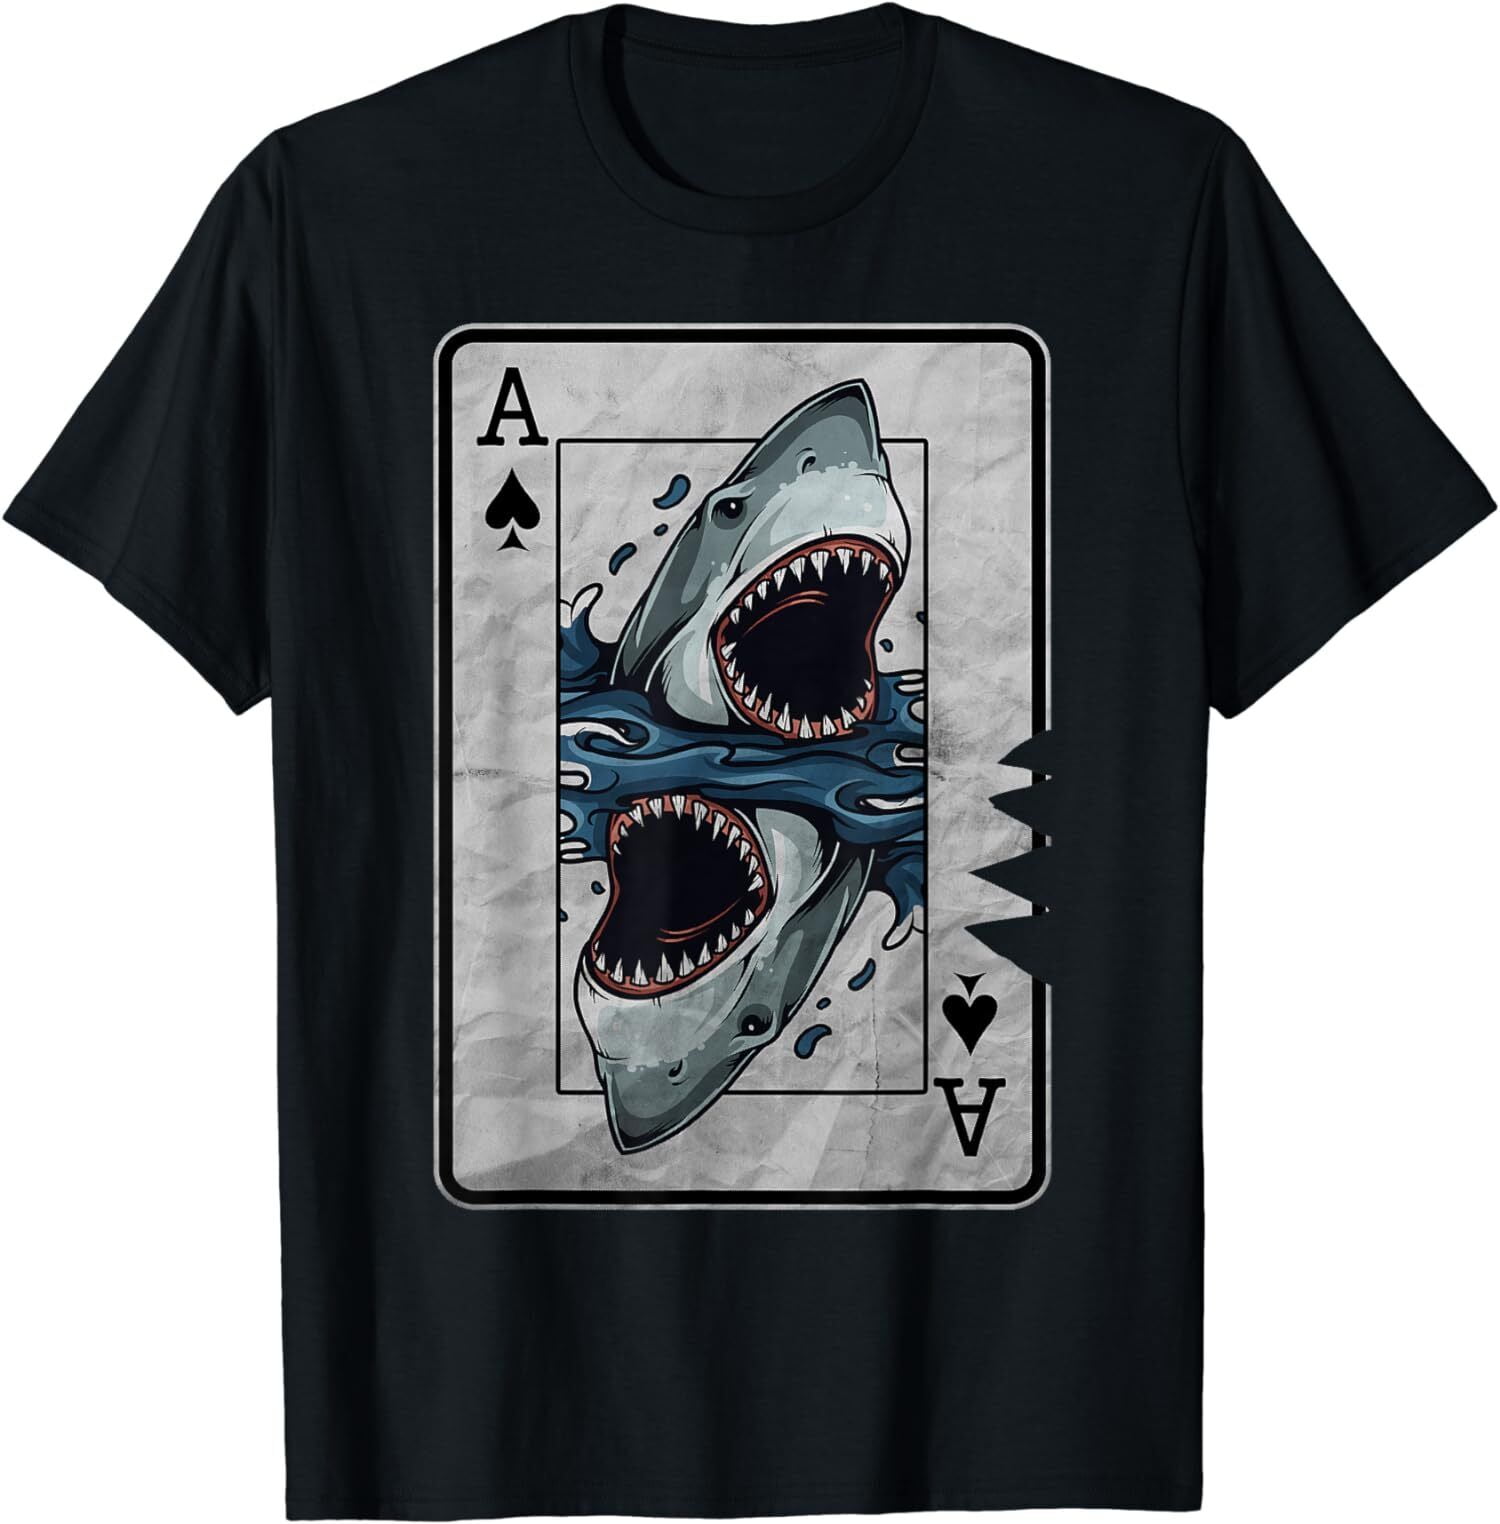 Poker Card Great White Shark Design Tee T-Shirt S-3XL - Walmart.com